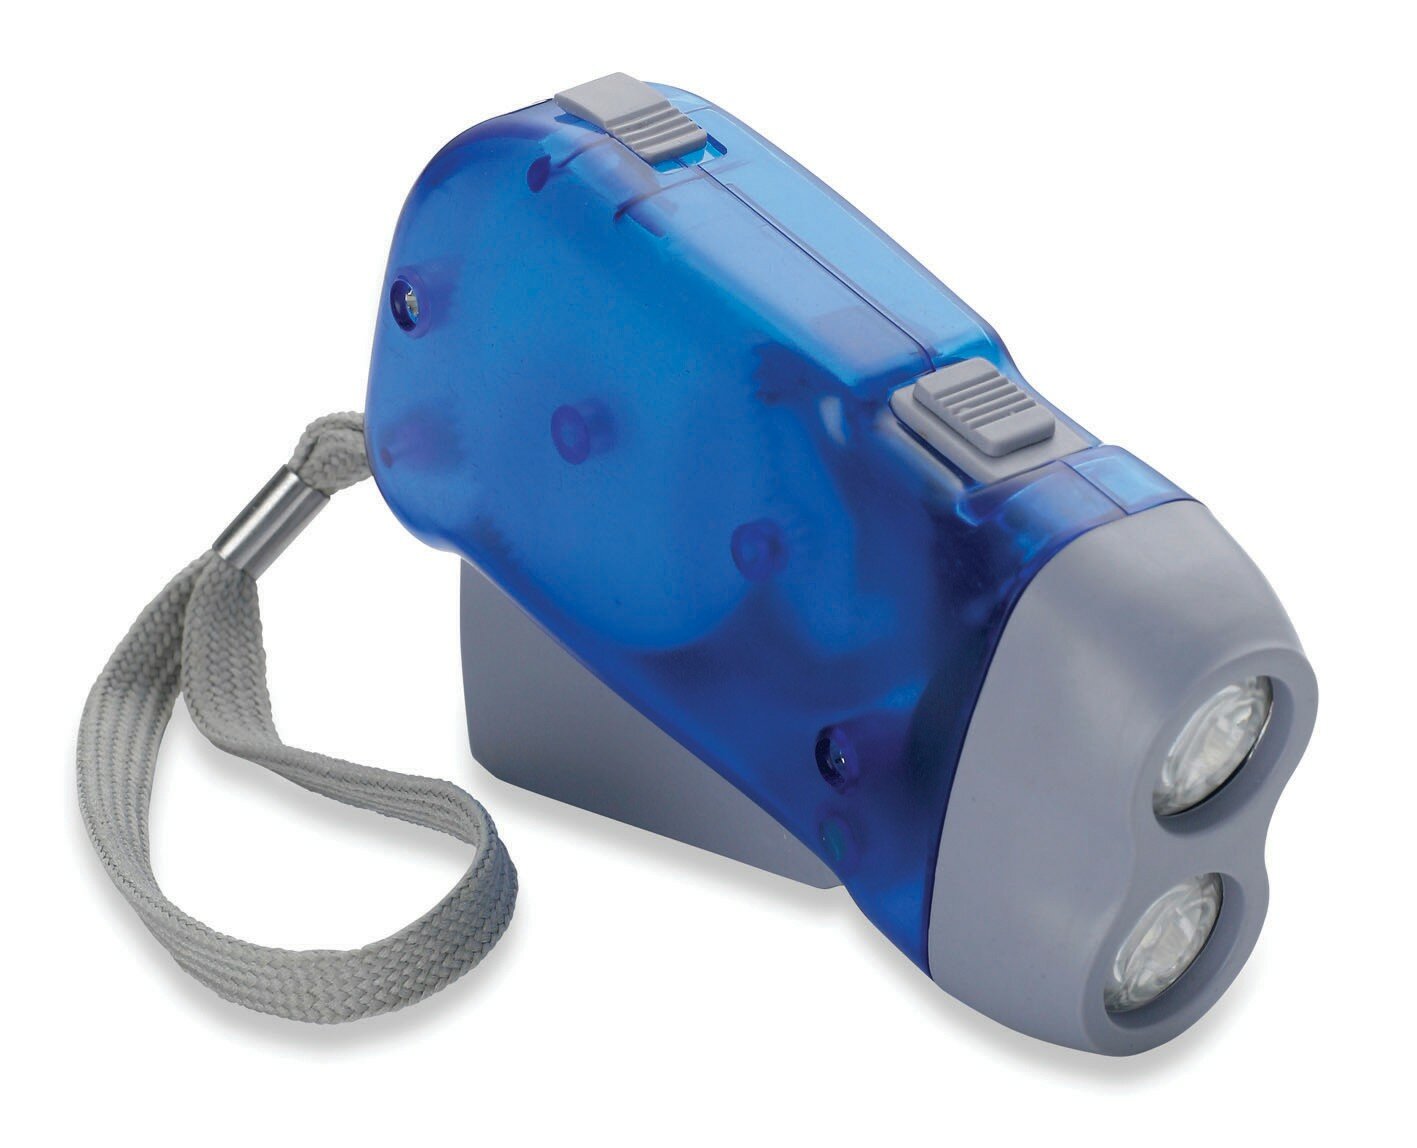 Облик фонарь ручной 502 (э/динамический+акк.) 2св/д, голубой+серый/пластик, 2 режима